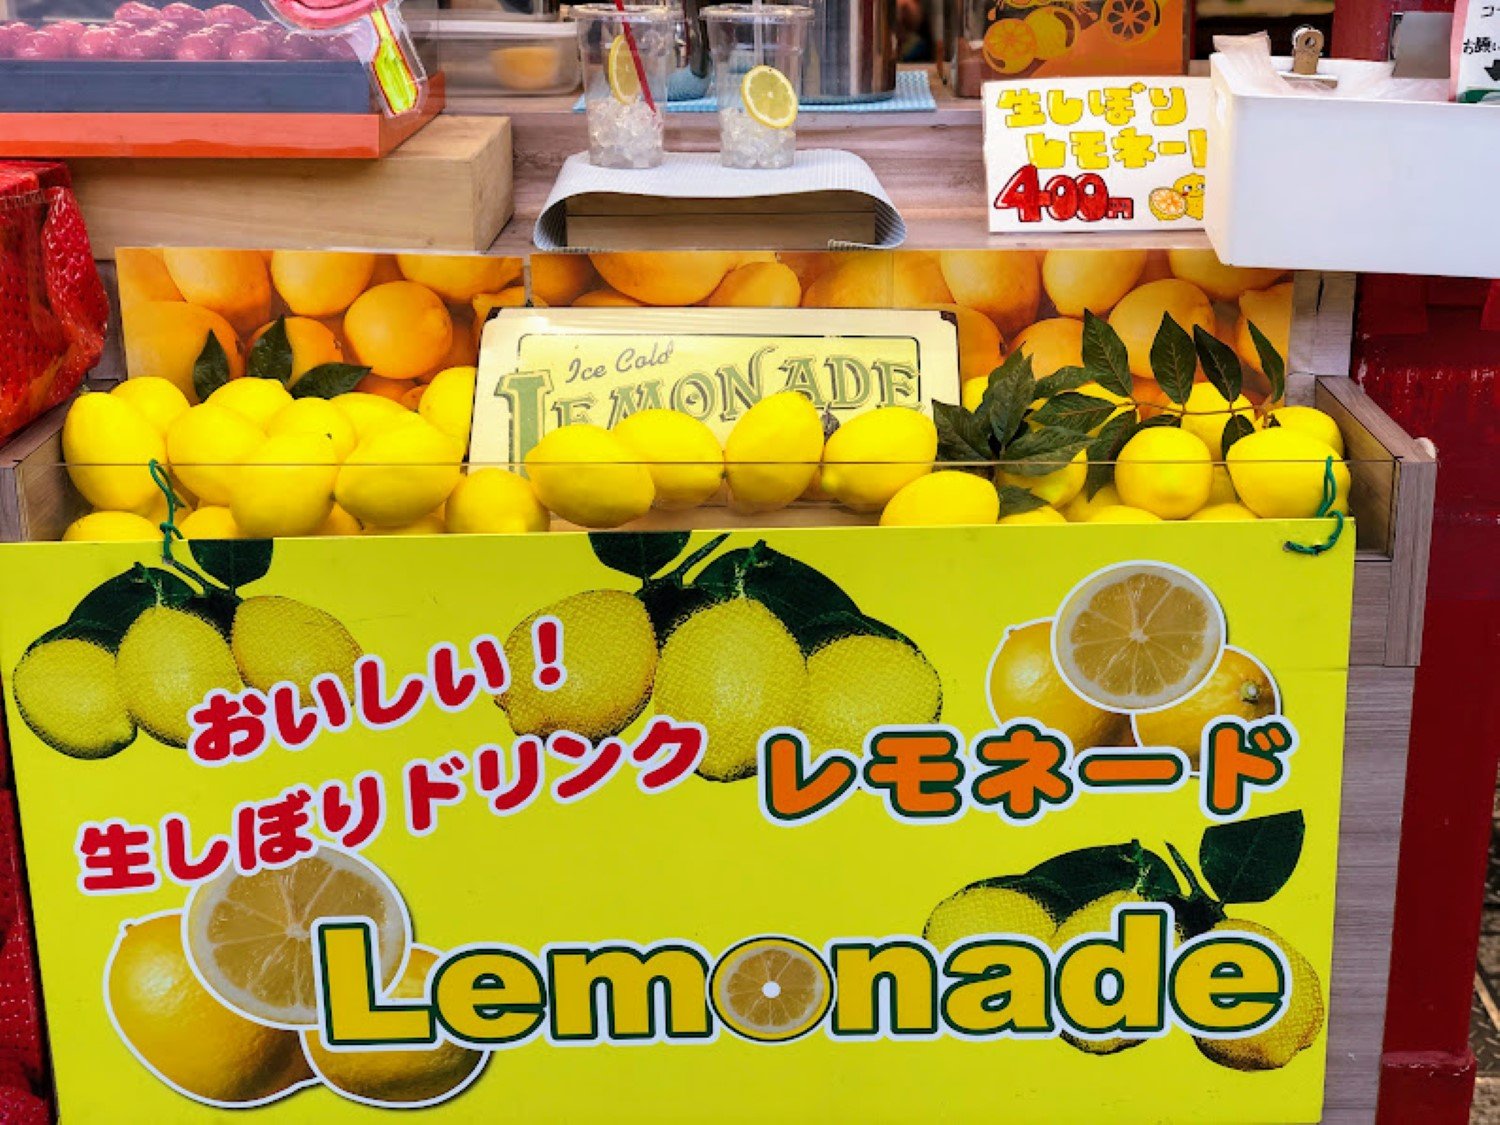 店頭では生しぼりレモネード400円も飲むことができる。